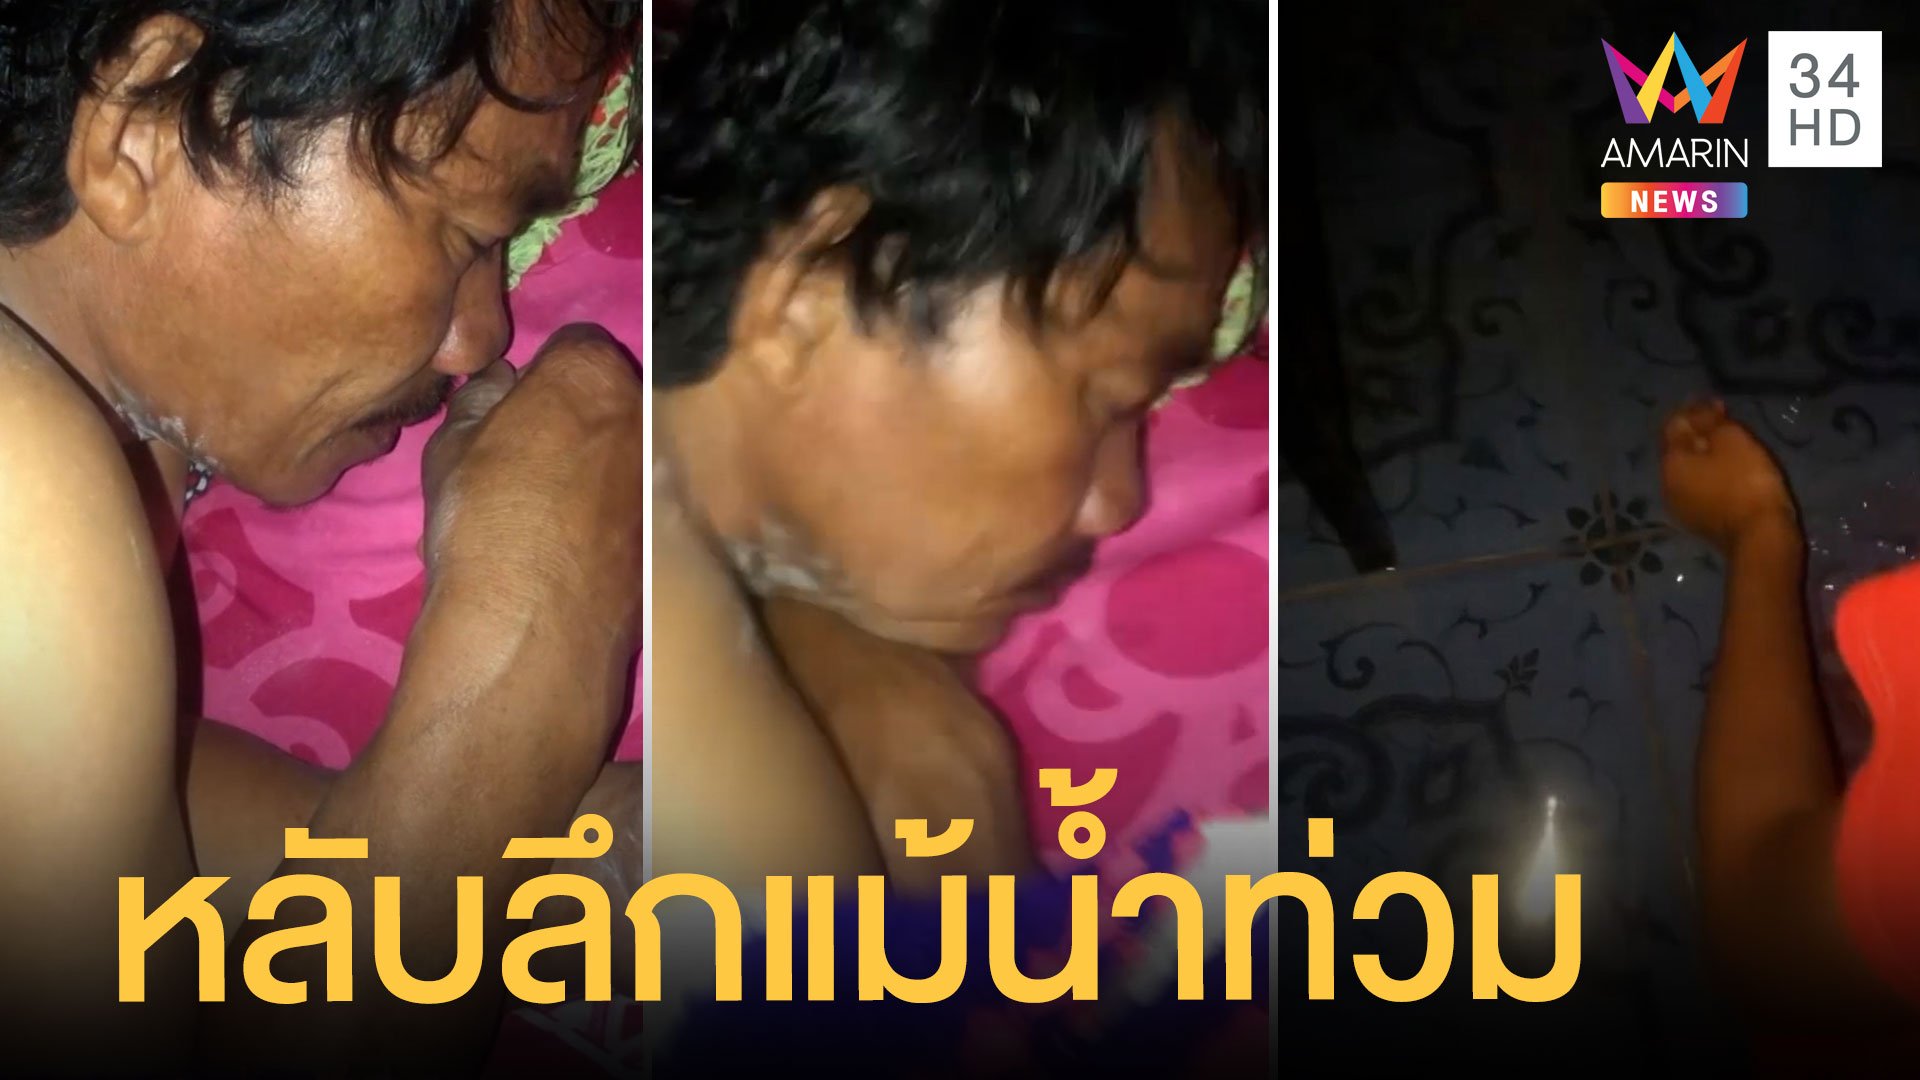 พ่อหลับลึก น้ำท่วมบ้านลูกสาวไปปลุกยังไม่ตื่น | ข่าวอรุณอมรินทร์ | 23 ก.ย. 64 | AMARIN TVHD34